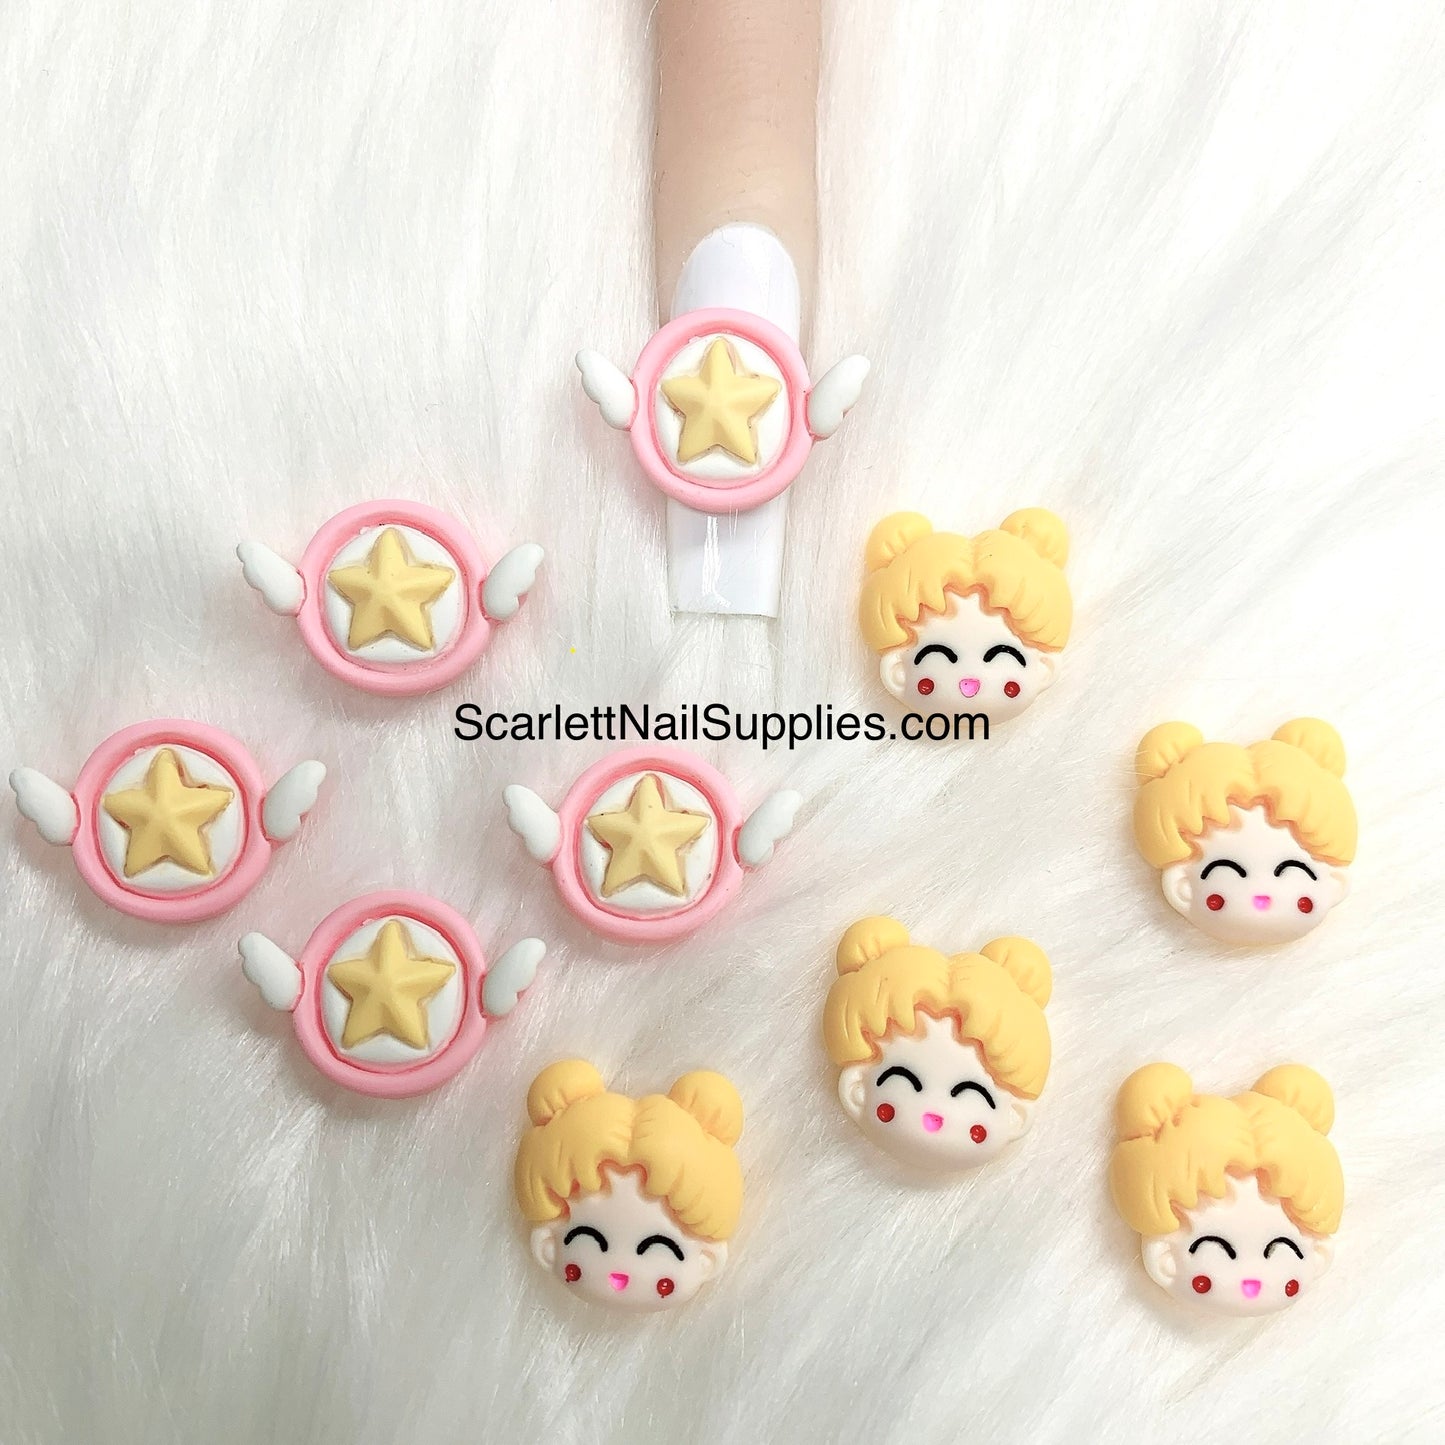 4pcs 3D Cartoon Sailor Moon Kawaii Charms